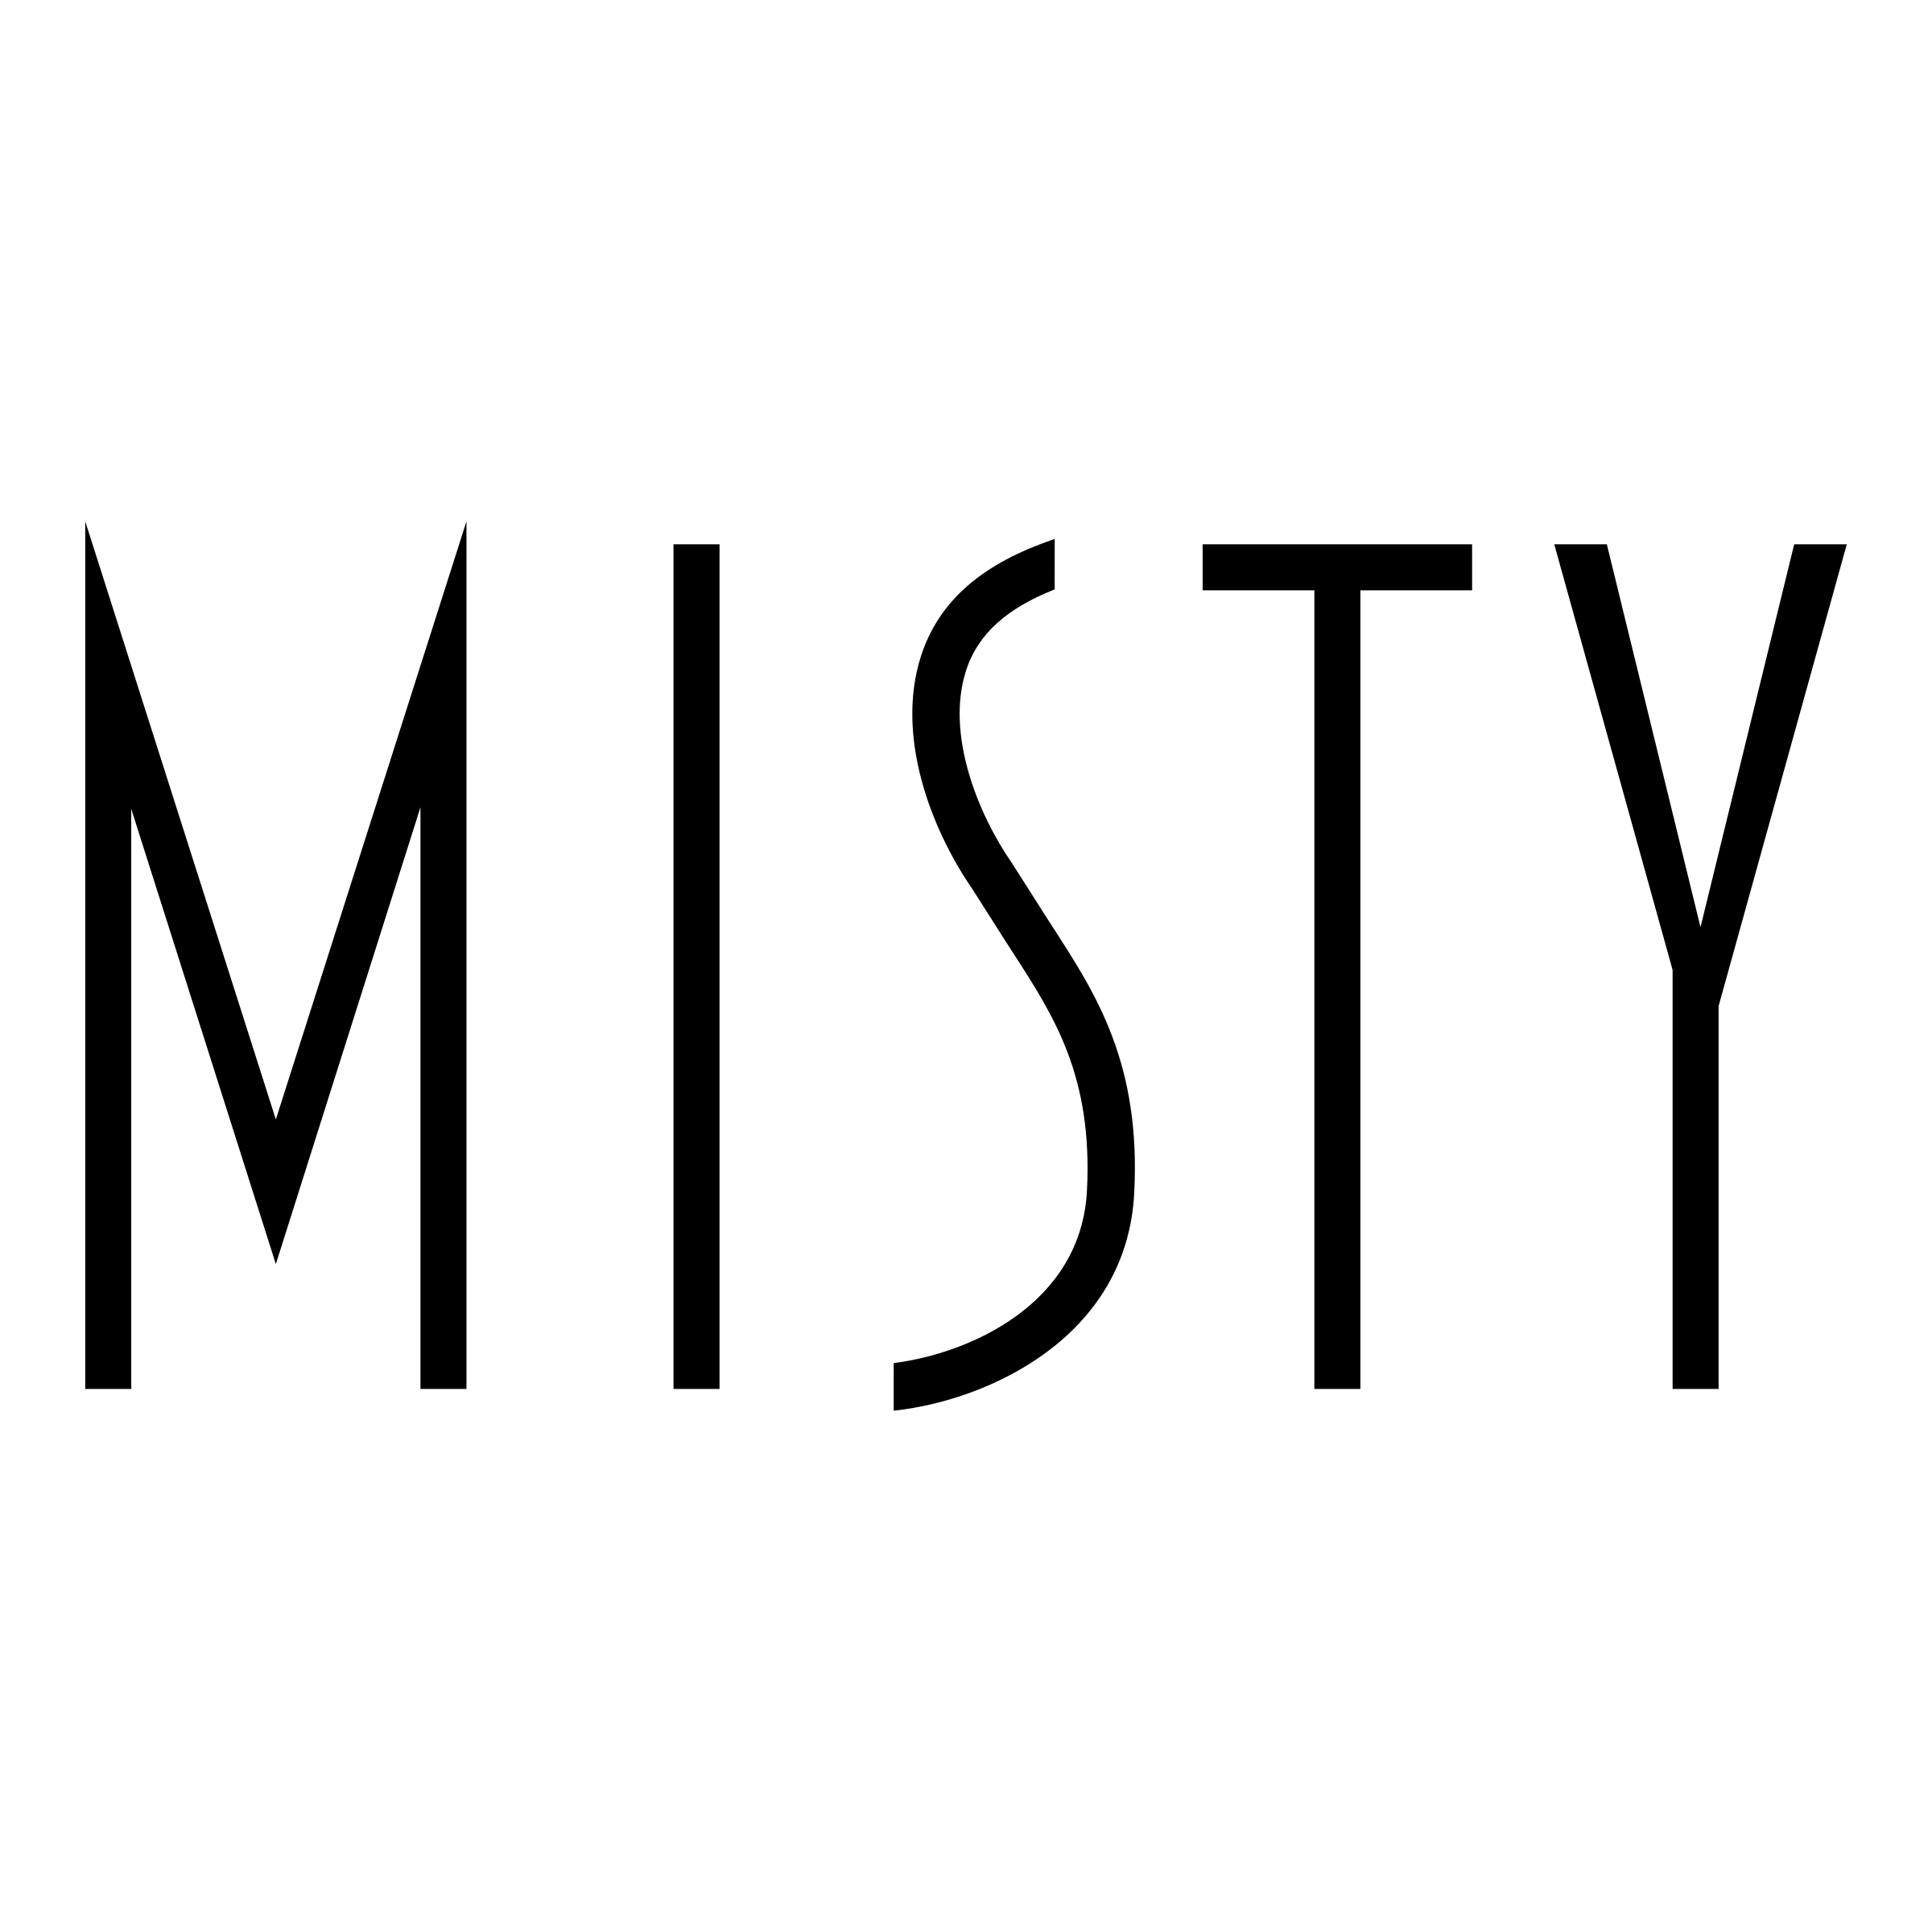 Misty Logo - Misty Logo PNG Transparent & SVG Vector